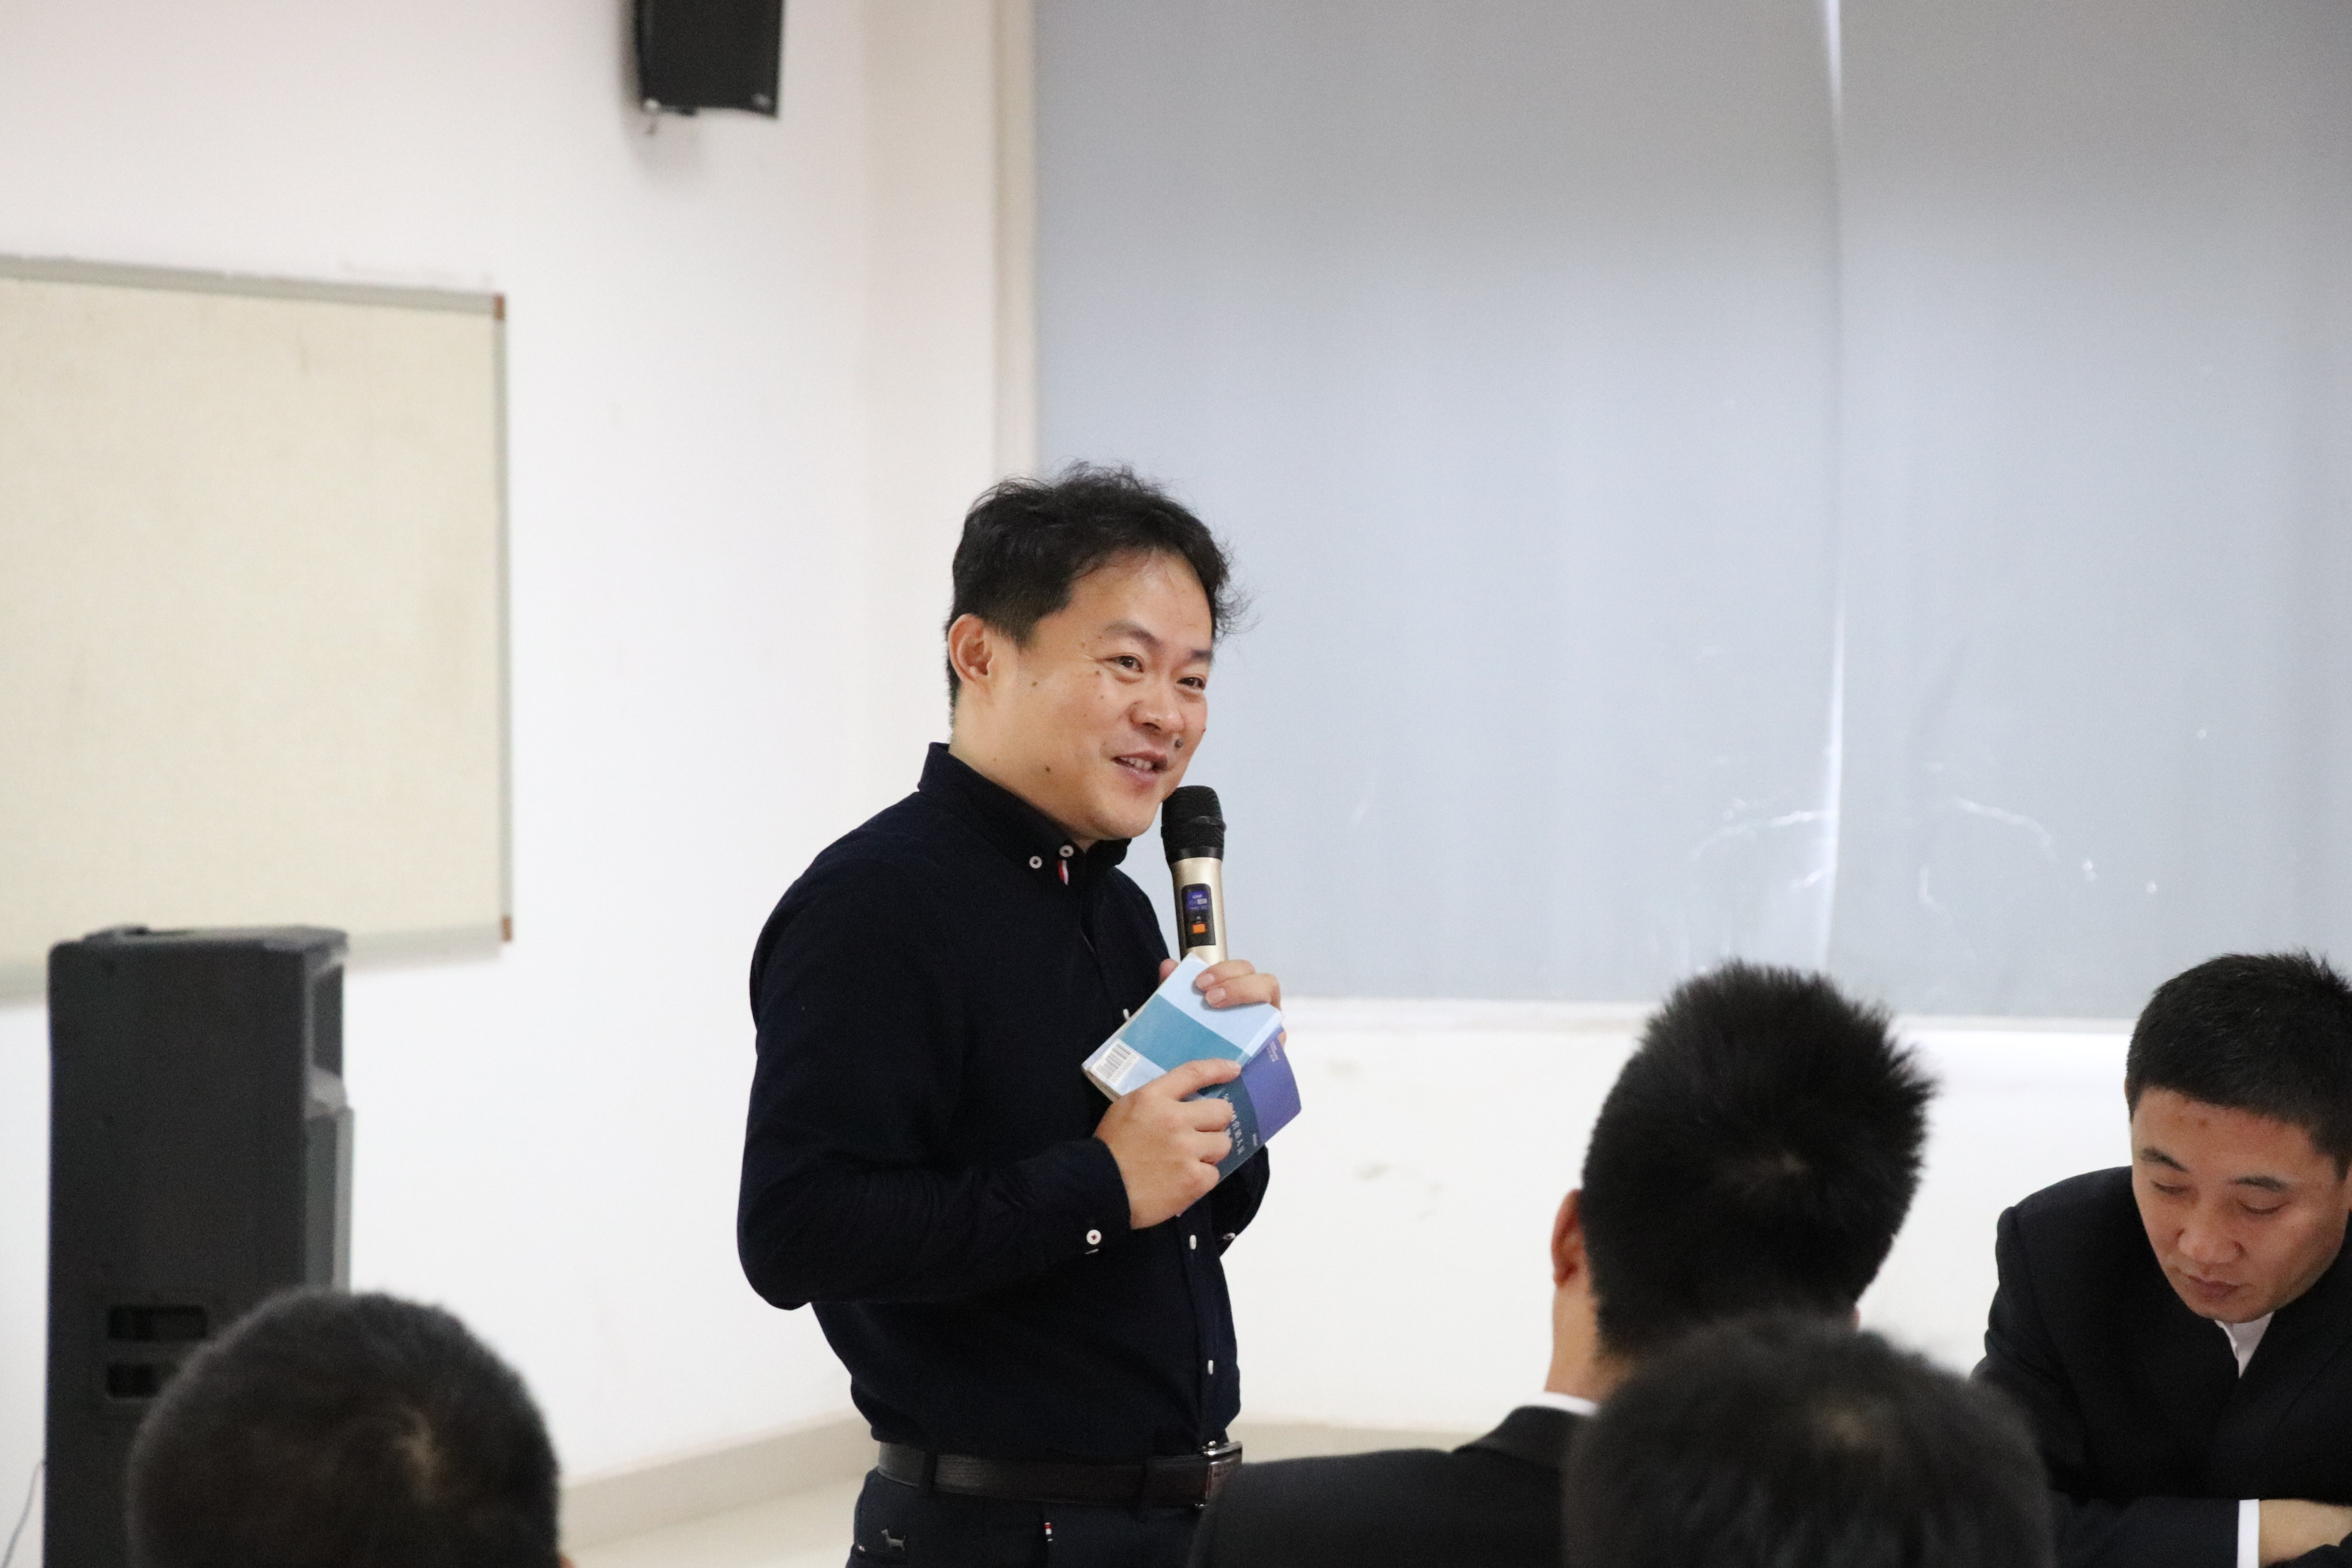 刘春华讲授《三一集团营销战略目标落地规划与实施》，道法术器解疑答惑